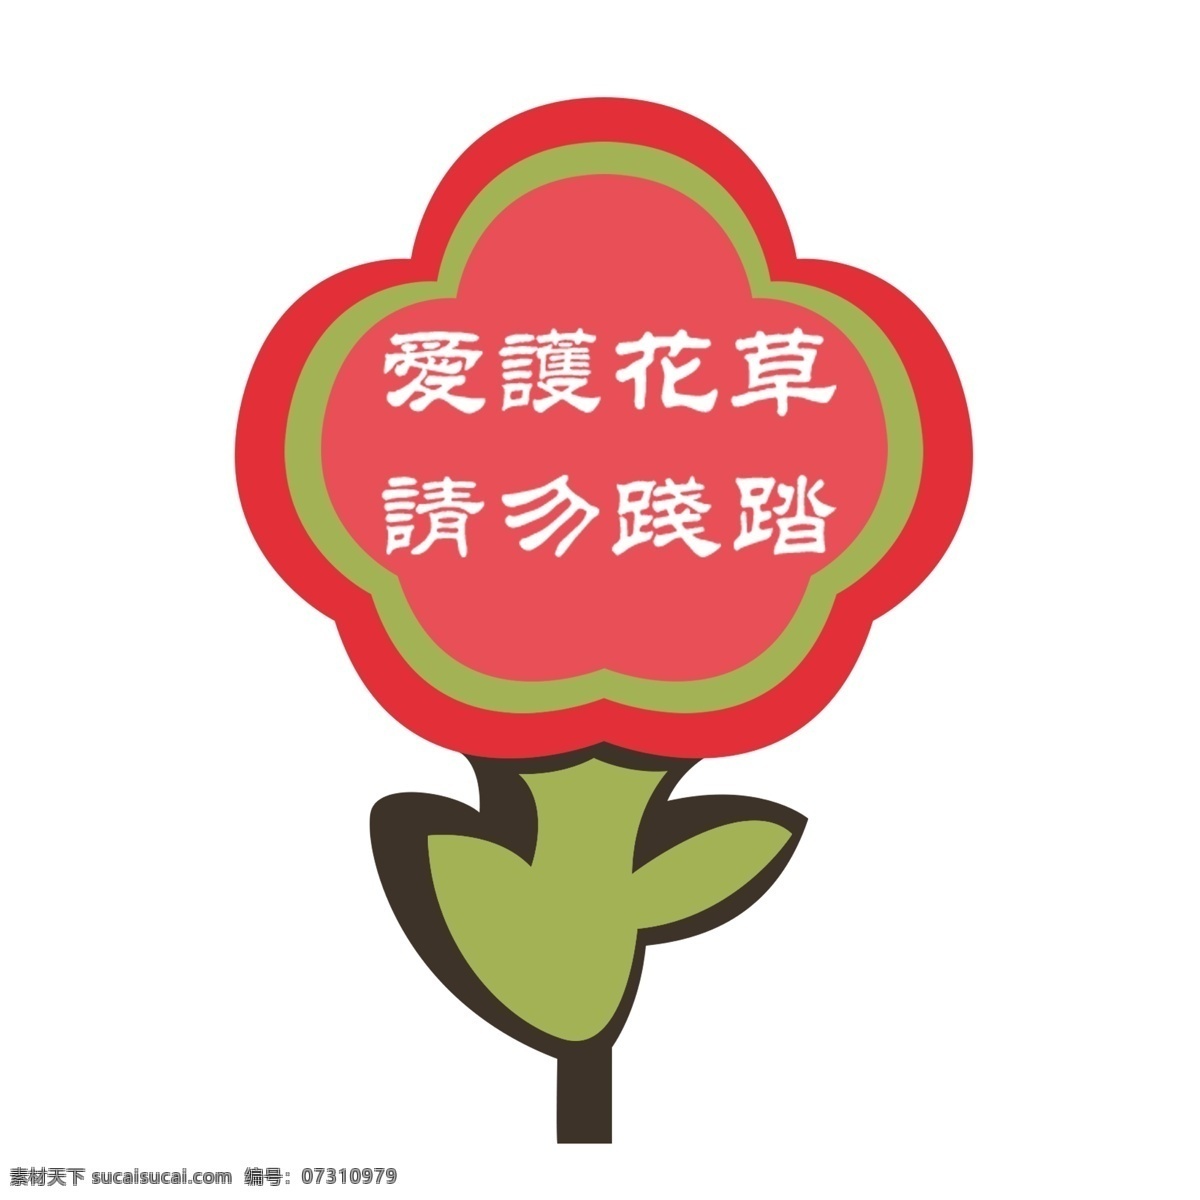 红色 小花 爱护 花草 标识 牌 透明 底 红色小花 绿色 警示牌 卡通 简笔 白色 标牌 环保 爱护花草 环境保护